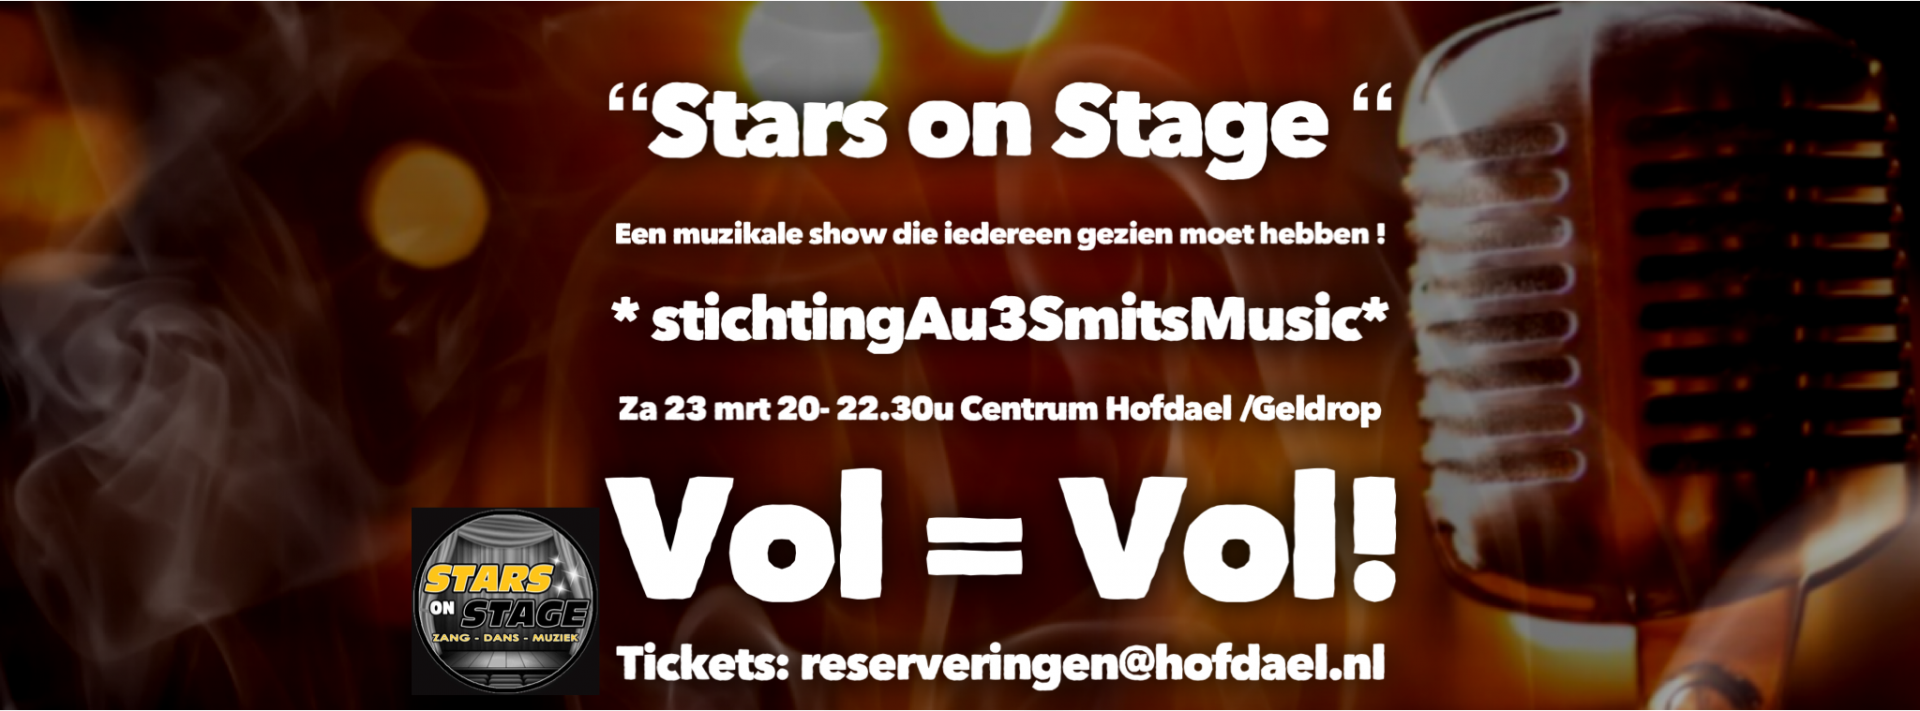 Stars on stage | Hofdael Geldrop Centrum